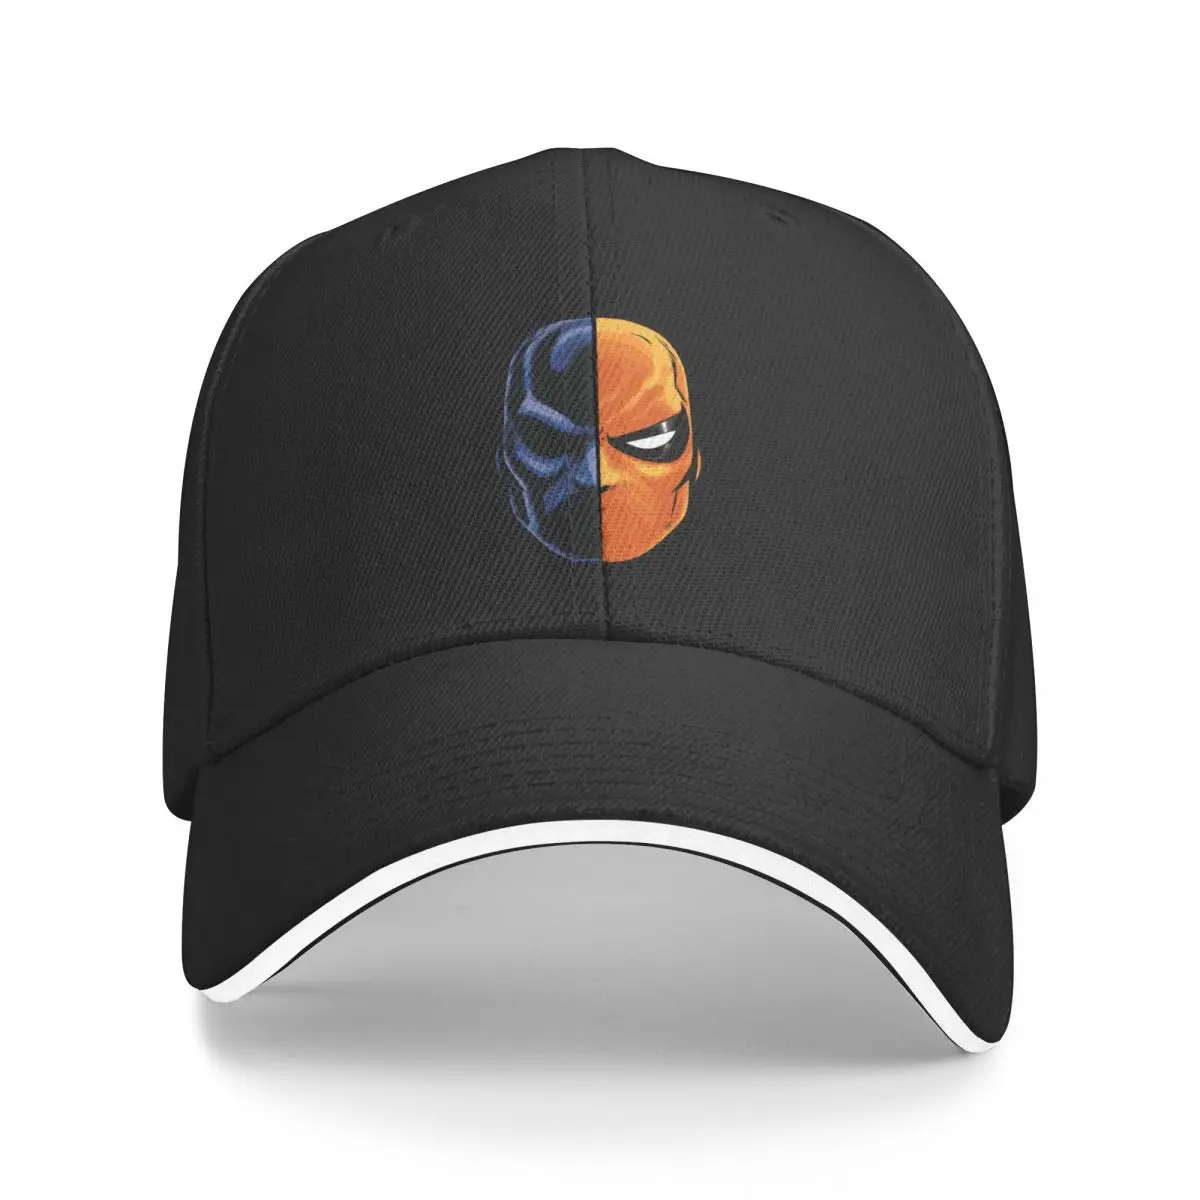 deathstroke - маска (подробнее) EssentialCap бейсболка джентльменская шляпа мужская шляпа для гольфа женская